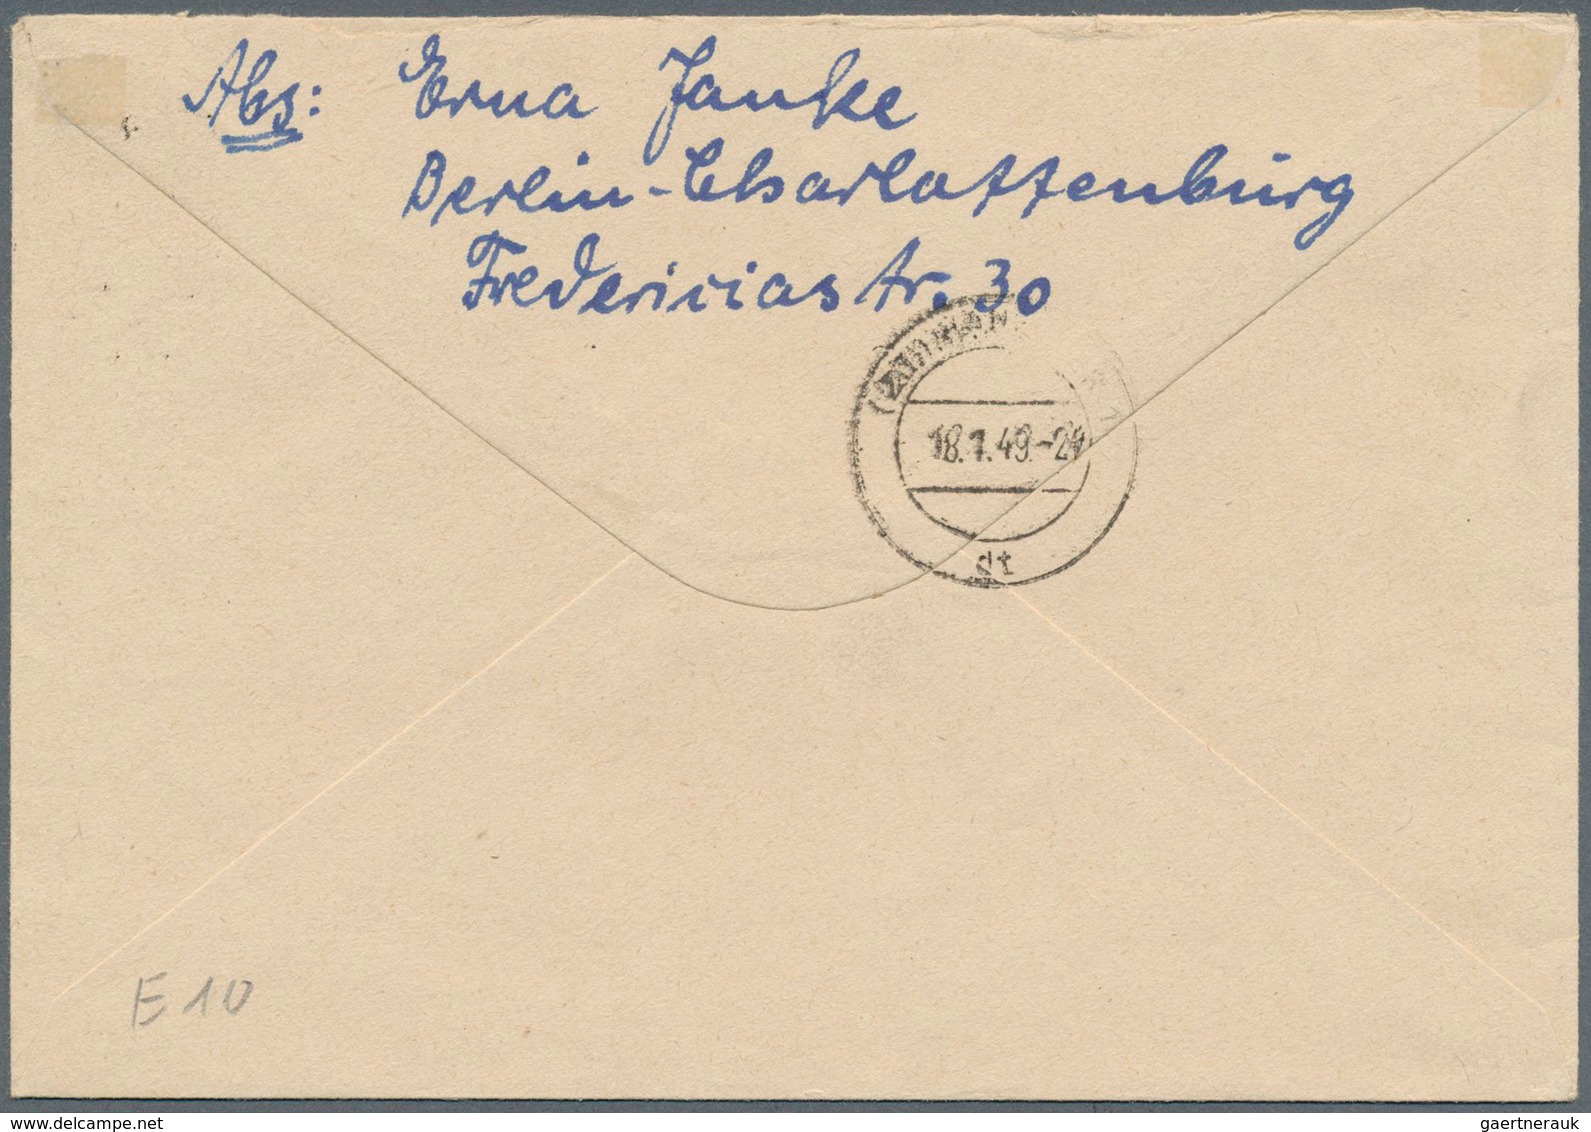 Berlin: 1949: 20, 24 Und 40 Pf Scharzaufdruck Zusammen Auf Brief Ab Berlin SW 11 Vom 16.1.49 Nach Ha - Storia Postale